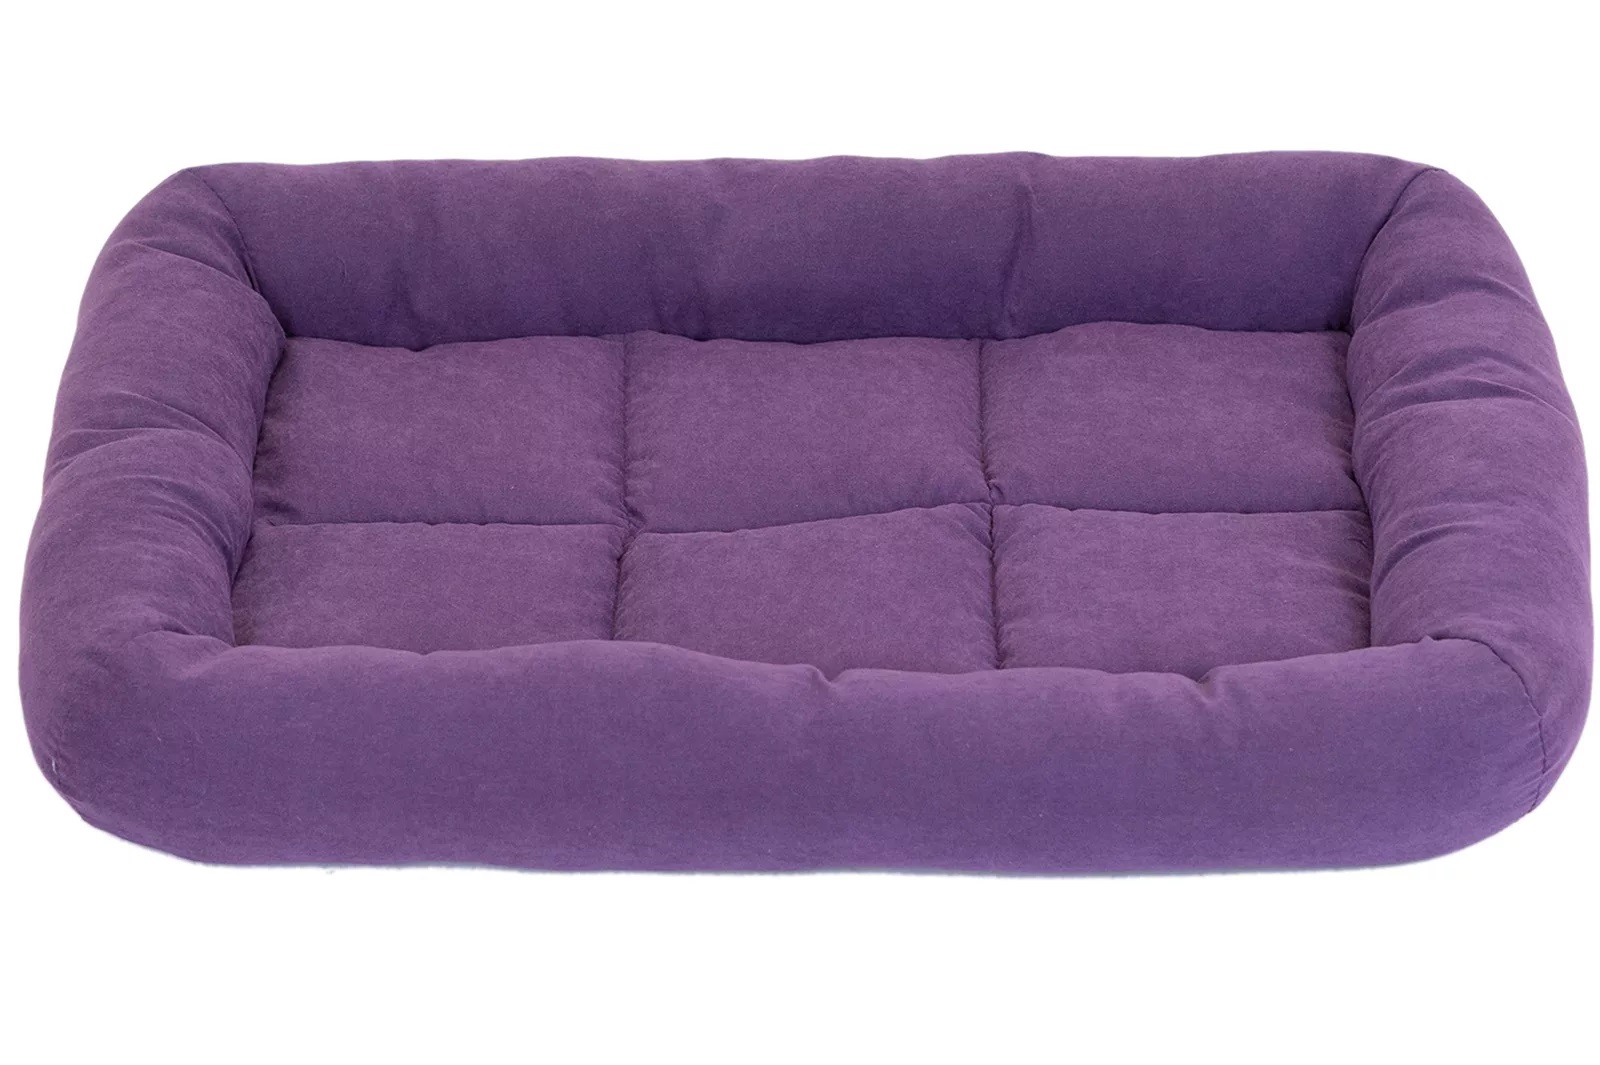 Лежанка прямоугольная фиолетовая Дарэленд батут-бархат с валиком, пух, периотек 54х37х7см №2